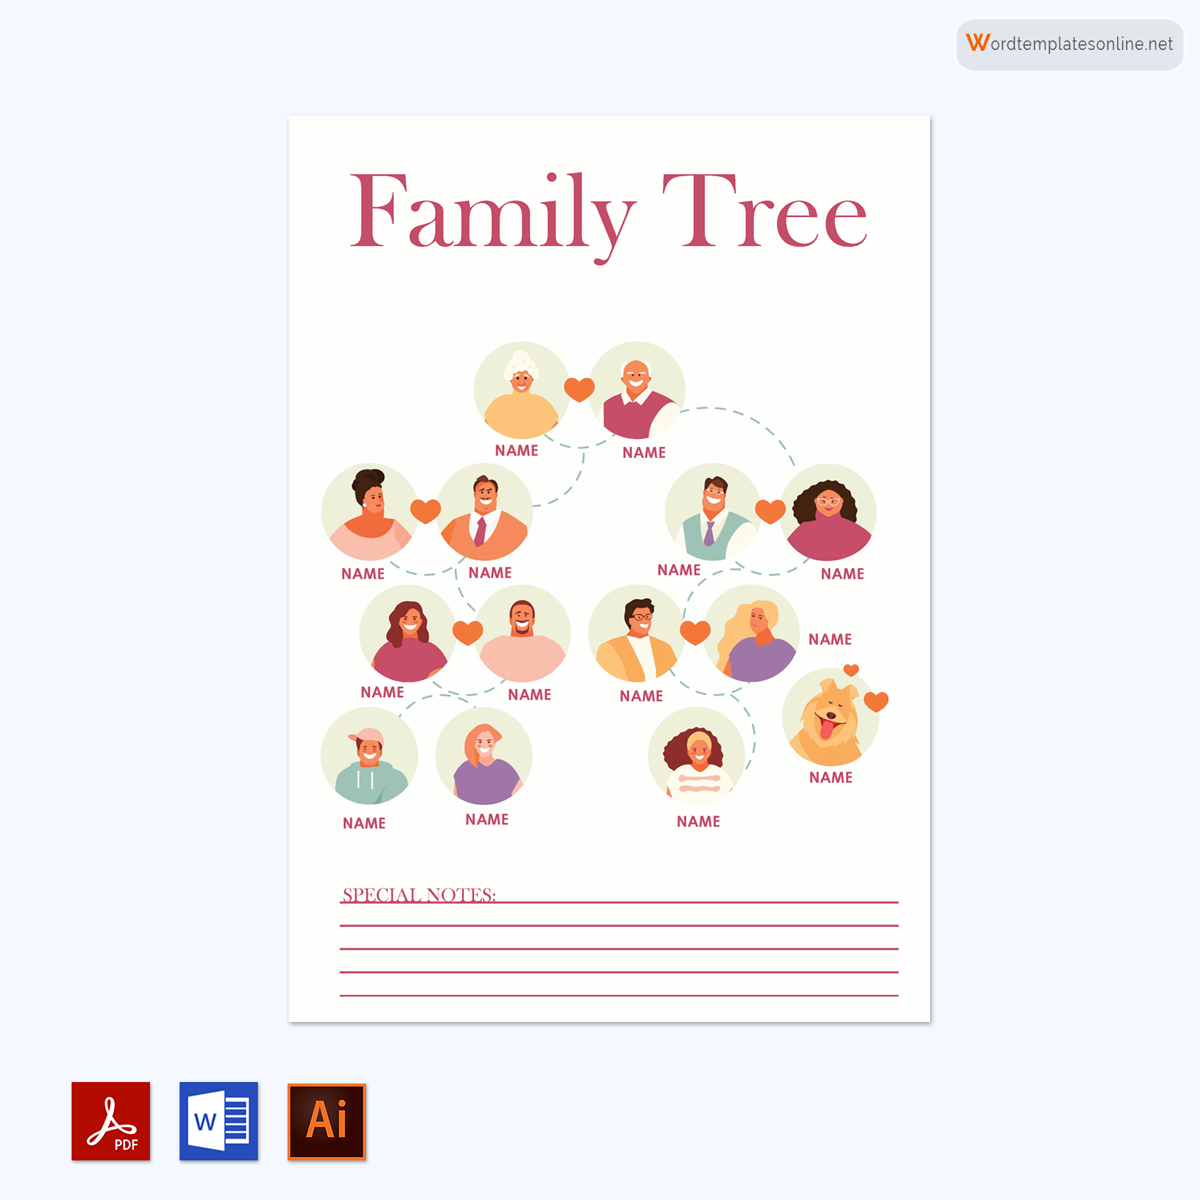  family tree template google docs 01